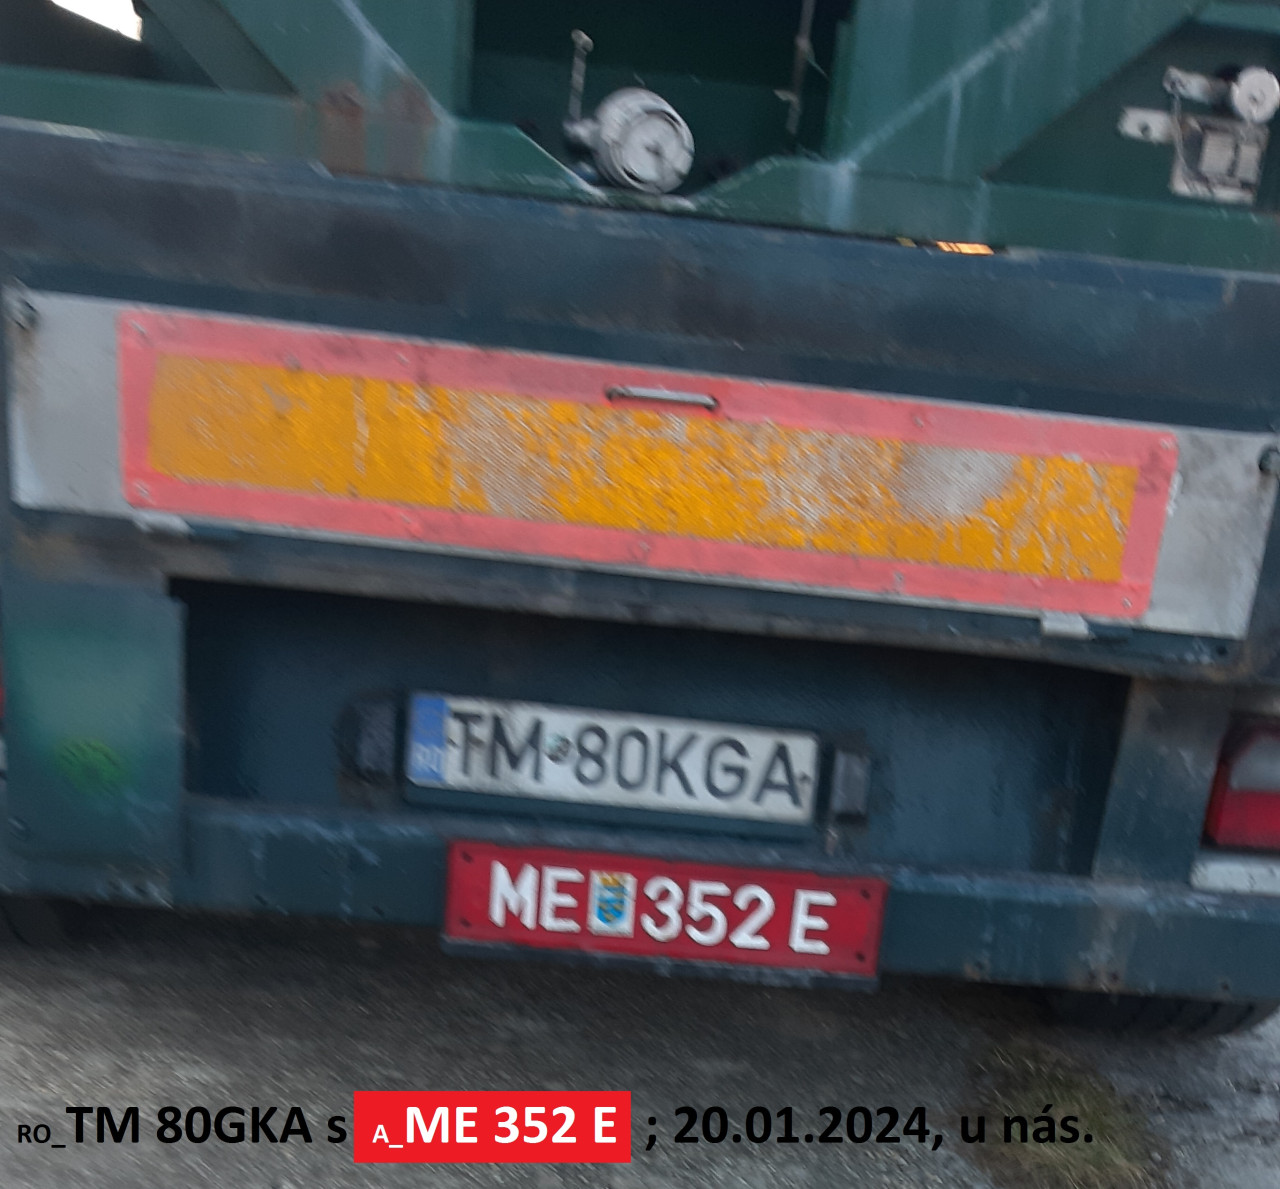 RO_TM 80GKA s A_ME 352 E; 20.01.2024, u ns.